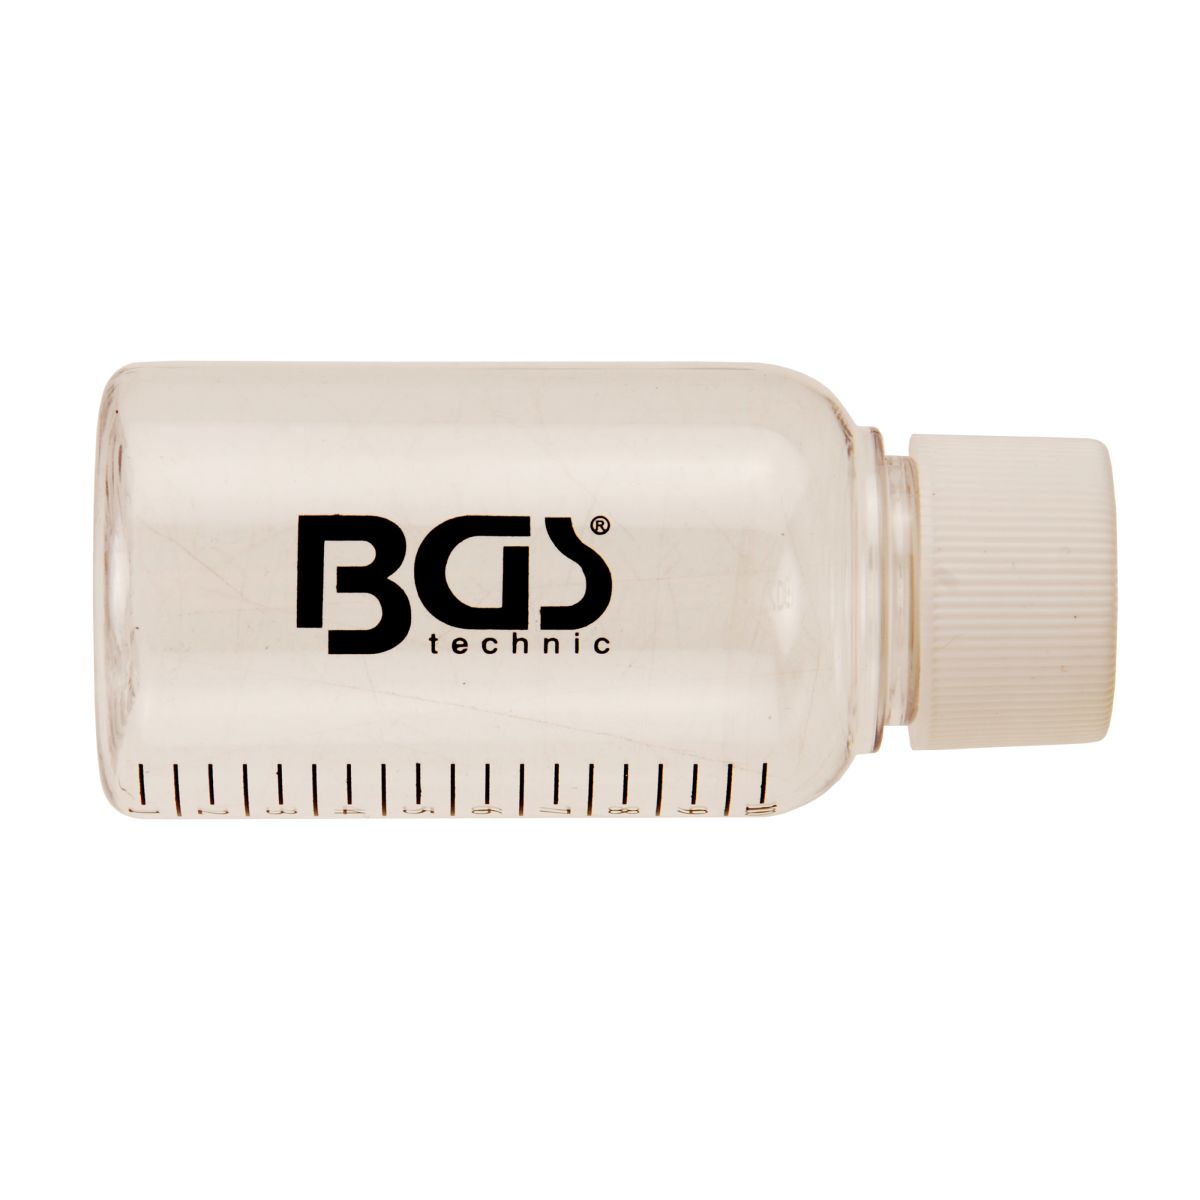 Plastic Bottle for BGS 8101, 8102